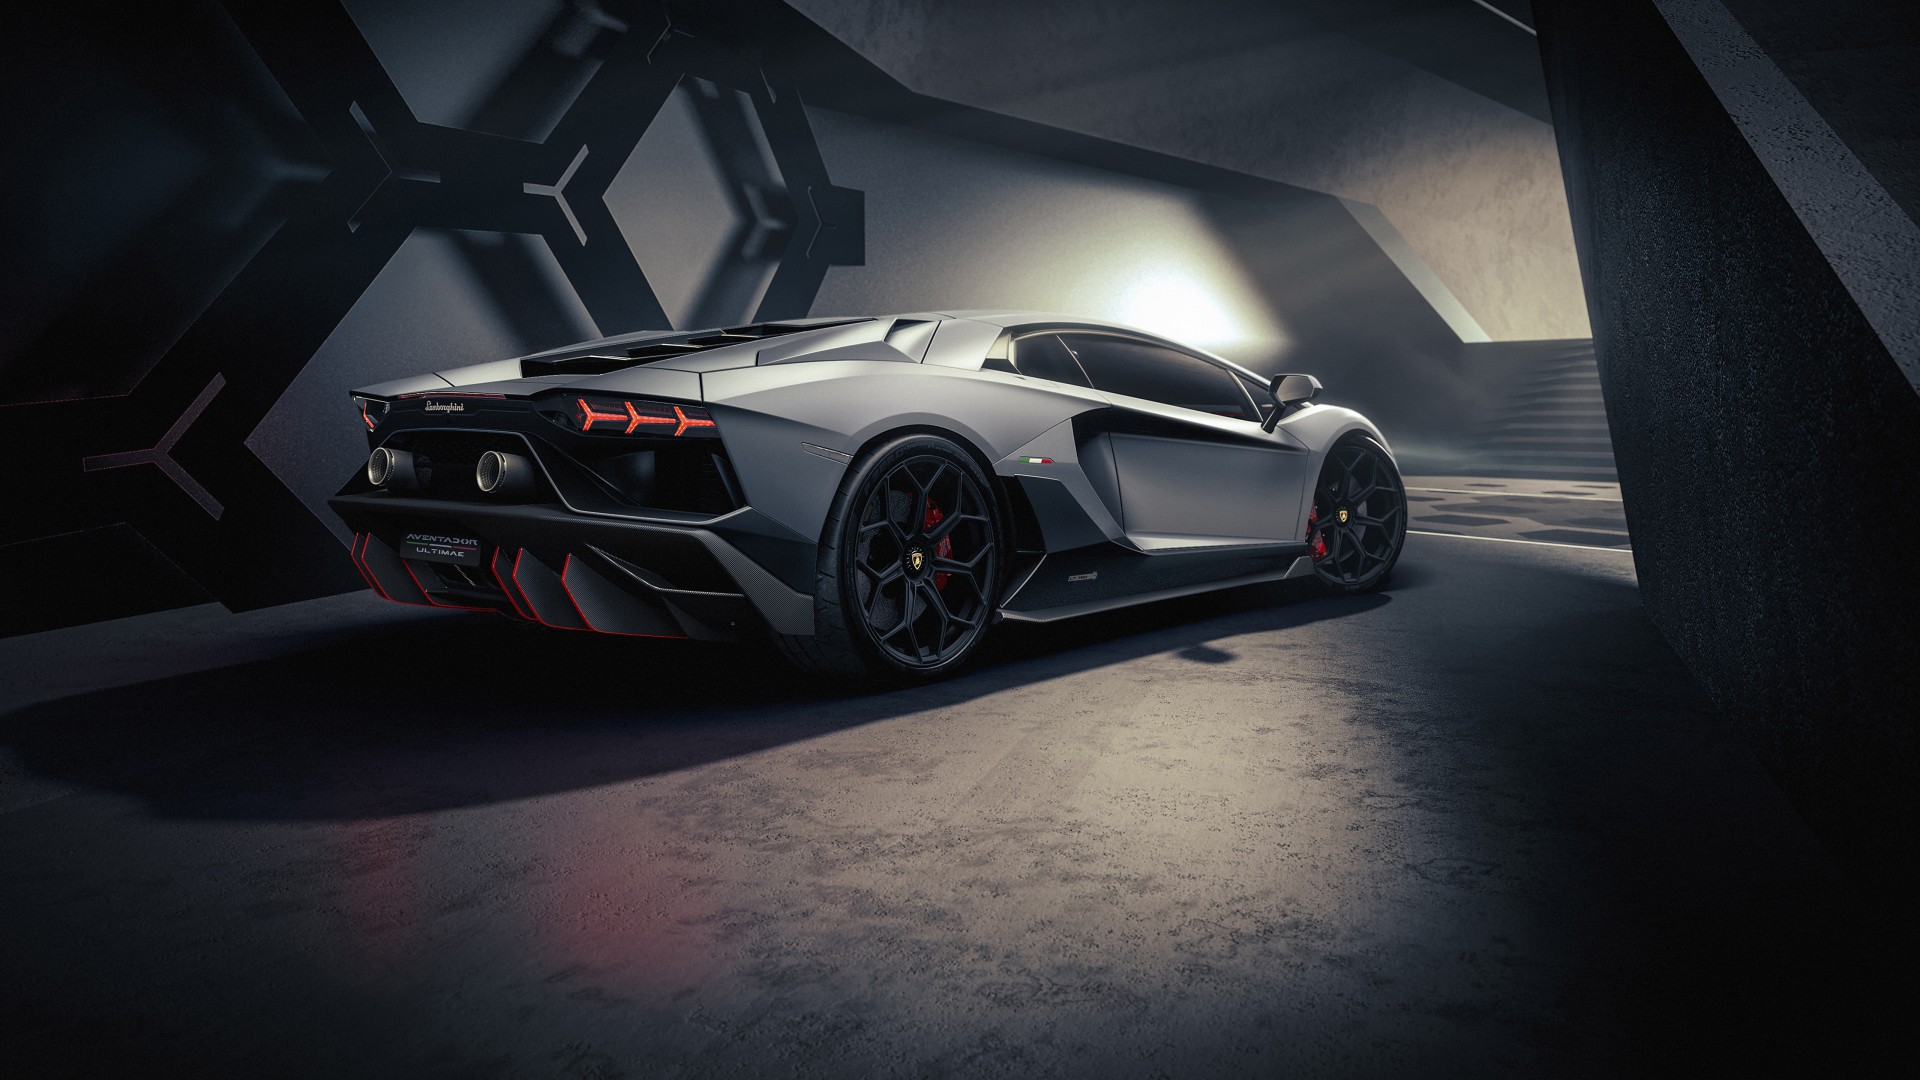 Lamborghini Aventador: Bạn đang tìm kiếm một chiếc siêu xe đẳng cấp và đầy sức mạnh? Lamborghini Aventador sẽ là sự lựa chọn tuyệt vời cho bạn. Với khối động cơ V12 mạnh mẽ và thiết kế đầy ấn tượng, chiếc xe này chắc chắn sẽ khiến bạn say đắm ngay từ cái nhìn đầu tiên.